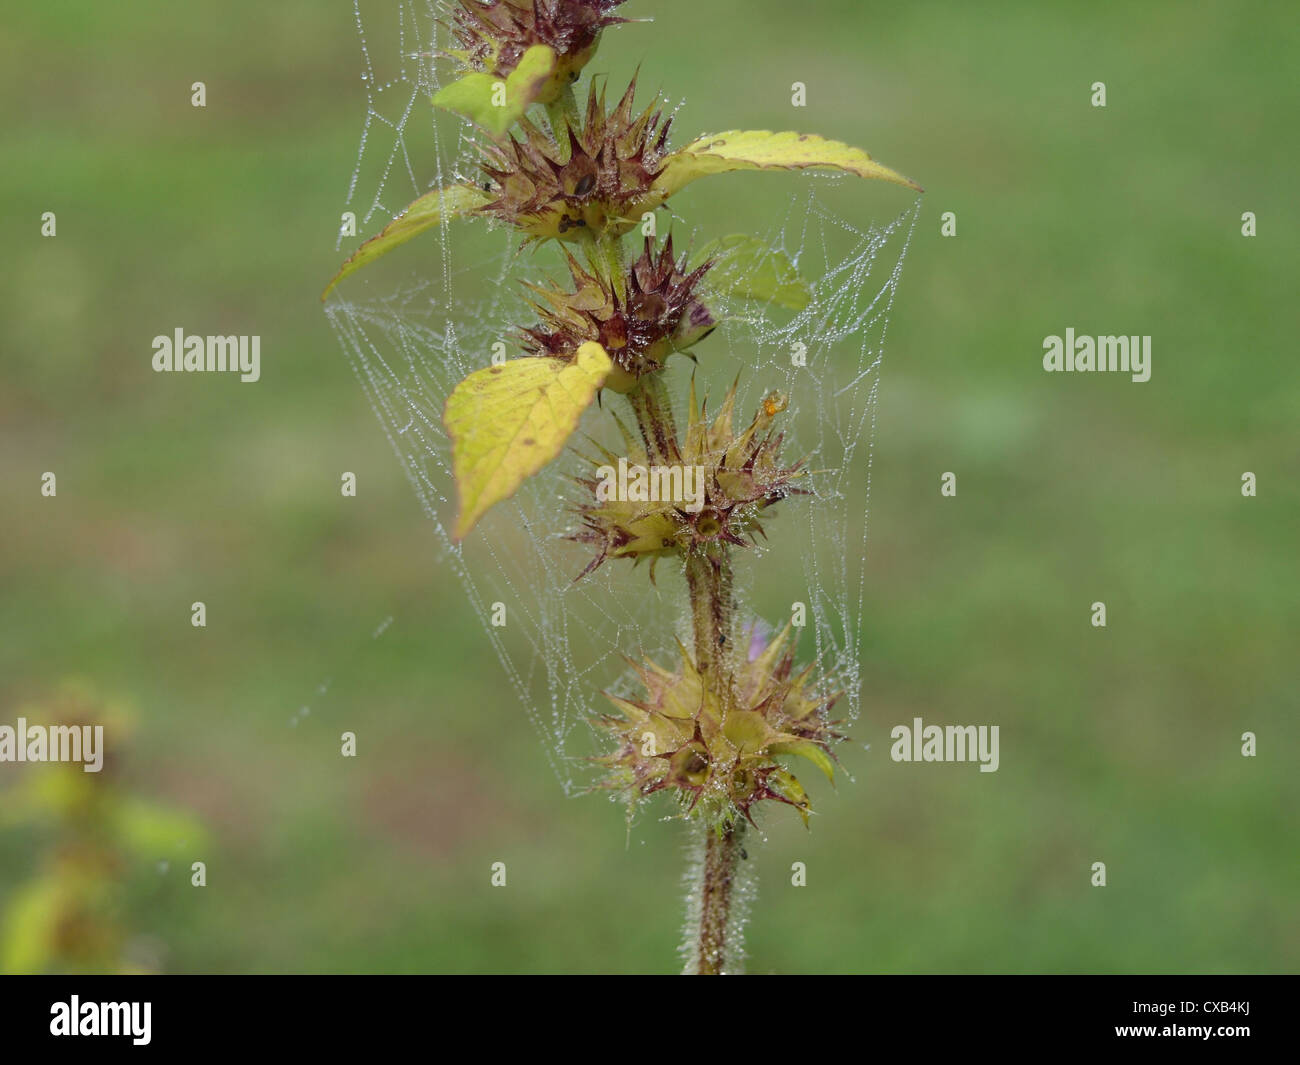 Telaraña con gotas de agua entre plantas / Spinnennetz mit Wassertropfen zwischen Pflanzen Foto de stock